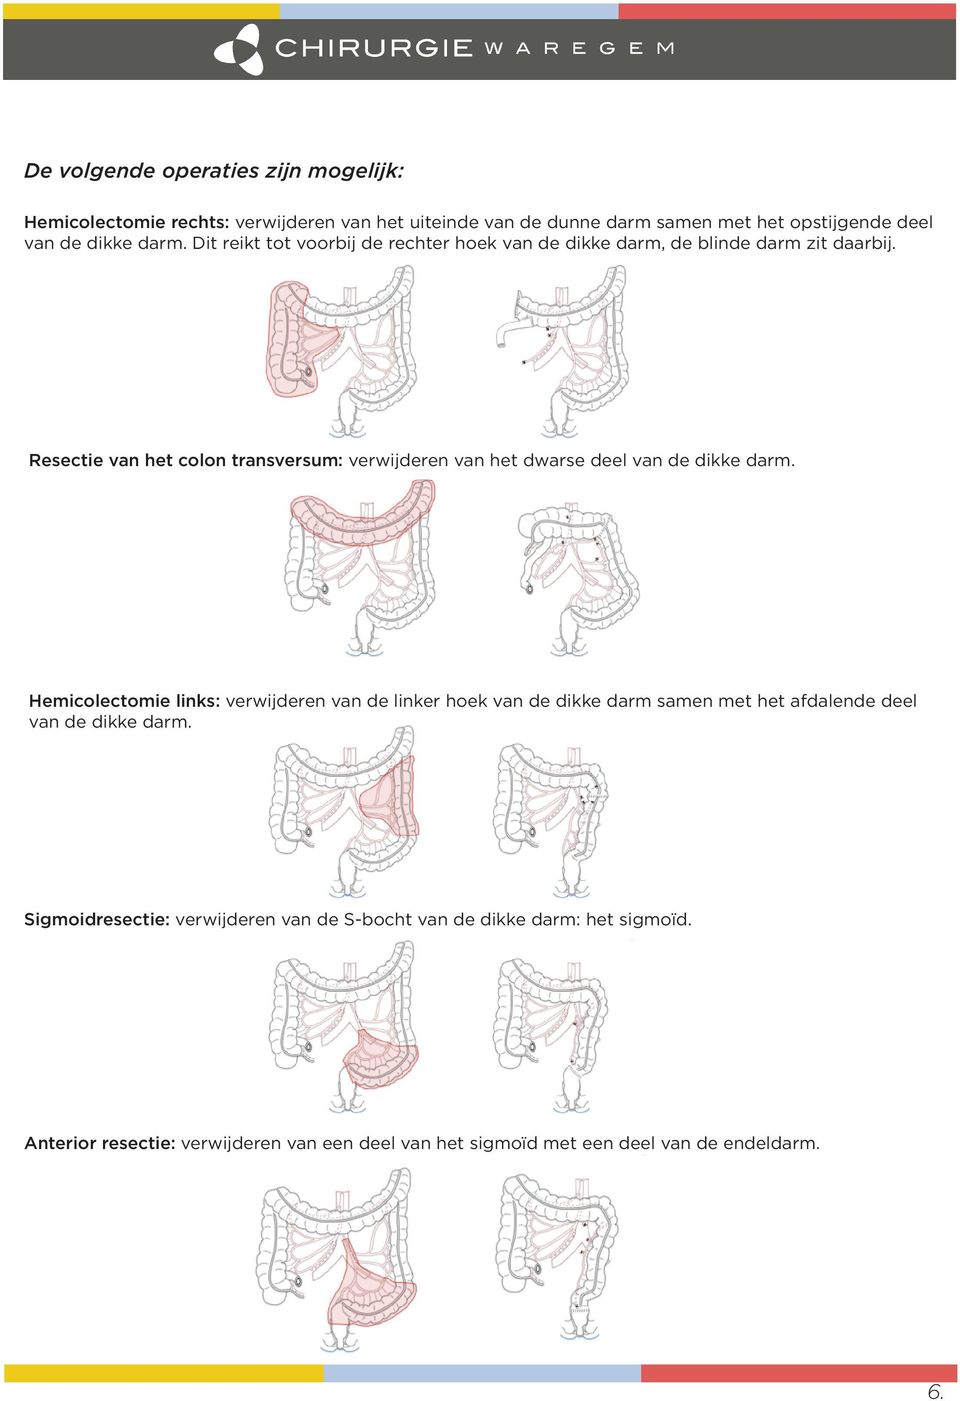 Resectie van het colon transversum: verwijderen van het dwarse deel van de dikke darm.